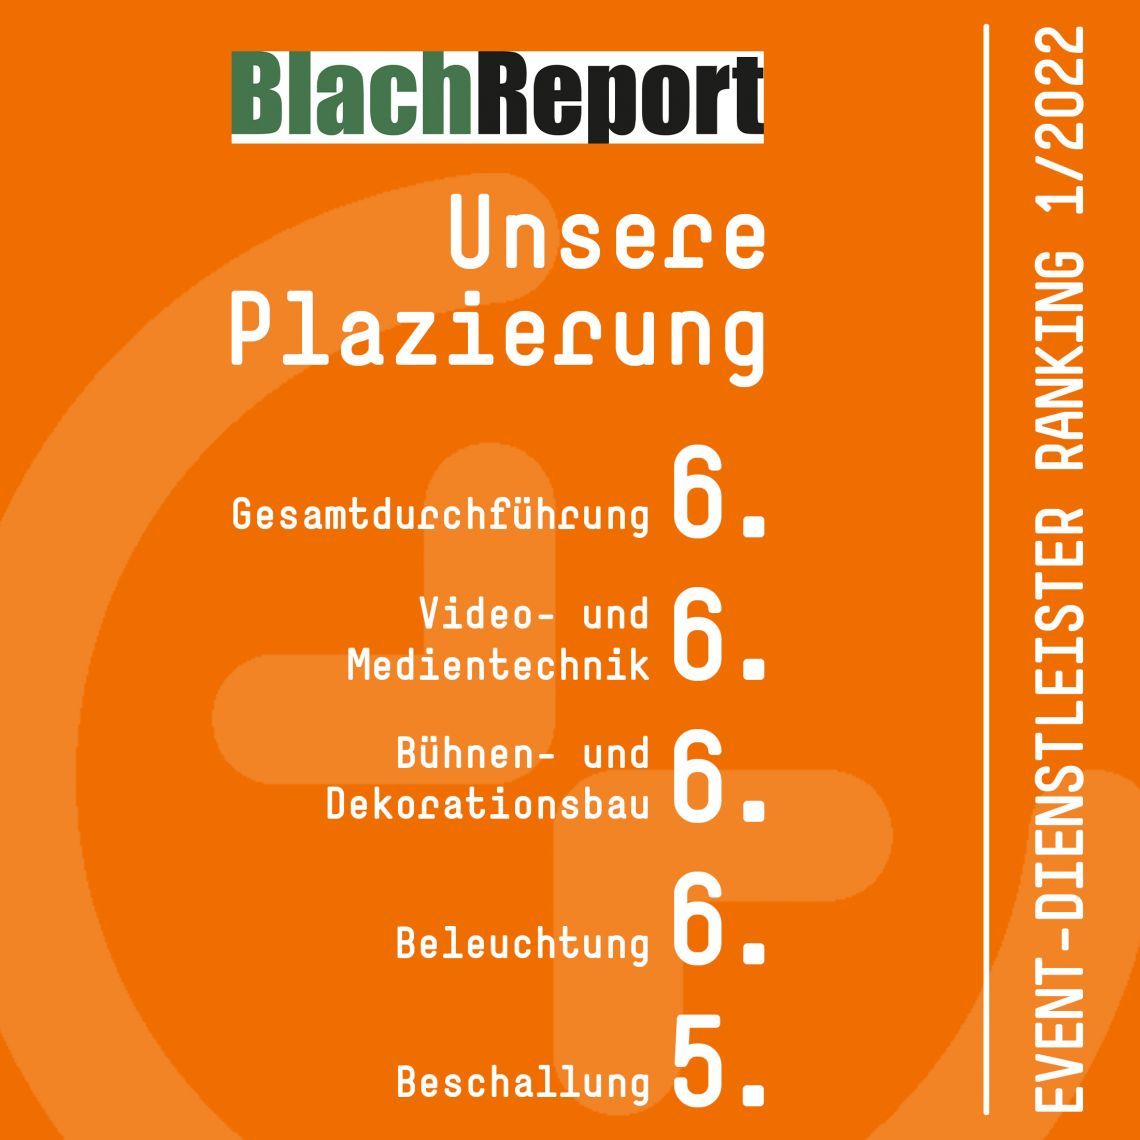 BlachReport Ranking 2022: b&b unter den Top 10 Eventdienstleistern